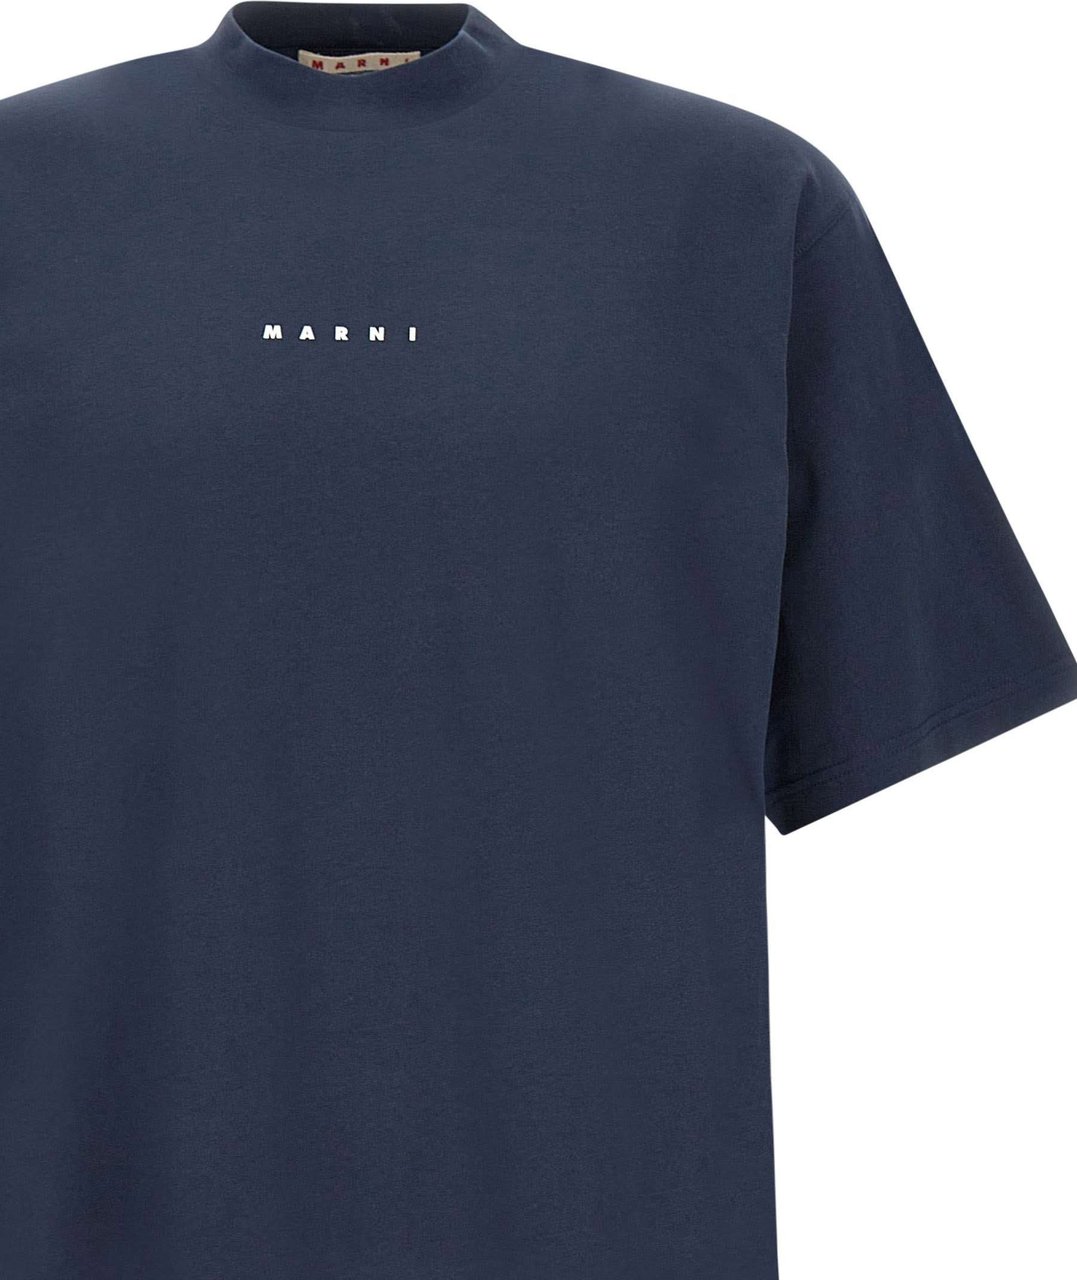 Marni MARNI T-Shirt Clothing Lob99 54 23SS Blauw